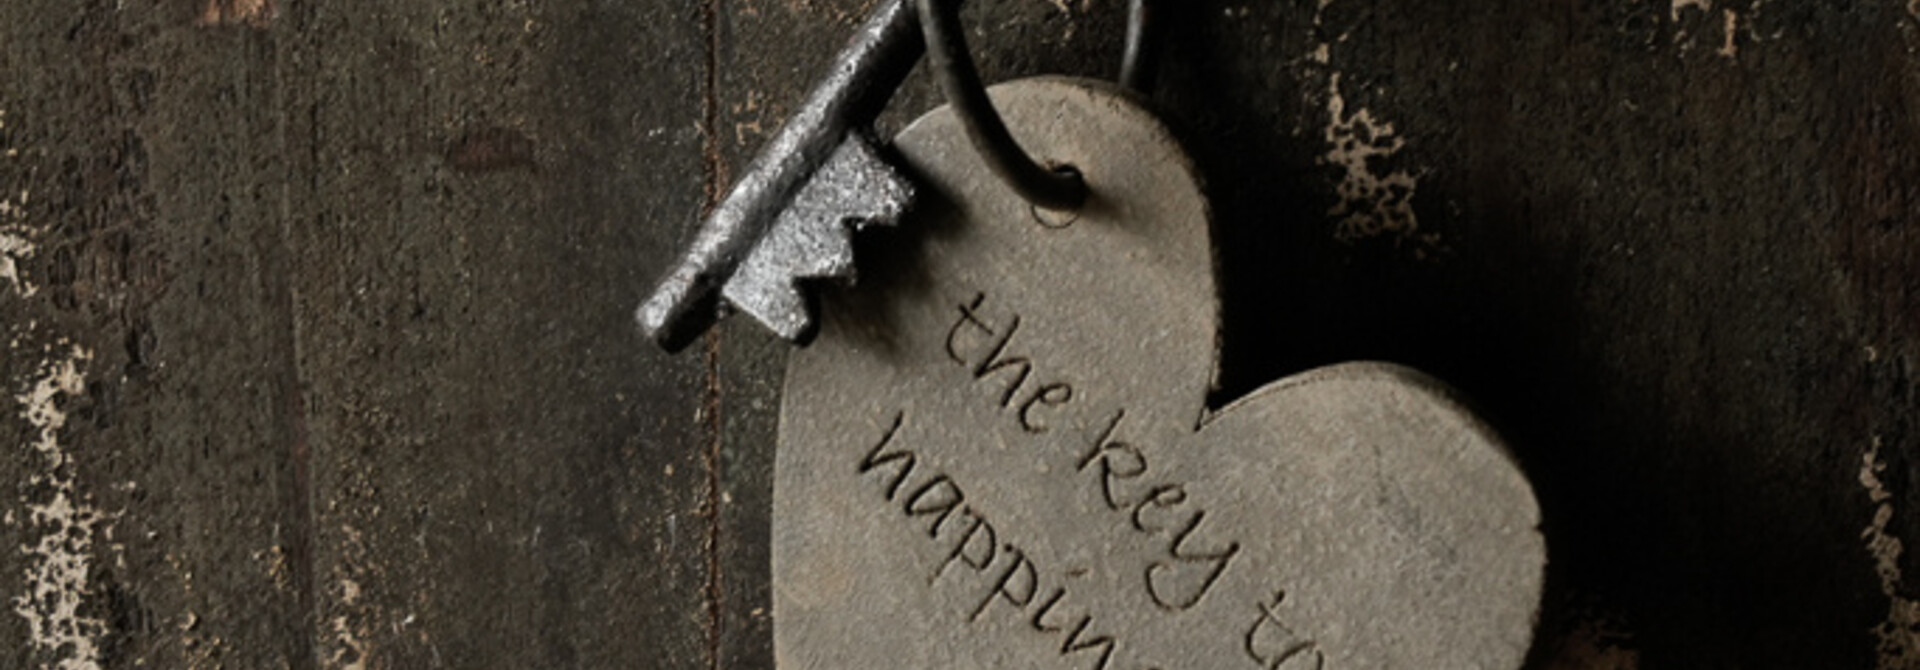 Schlüsselanhänger mit Text „Der Schlüssel zum Glück“.